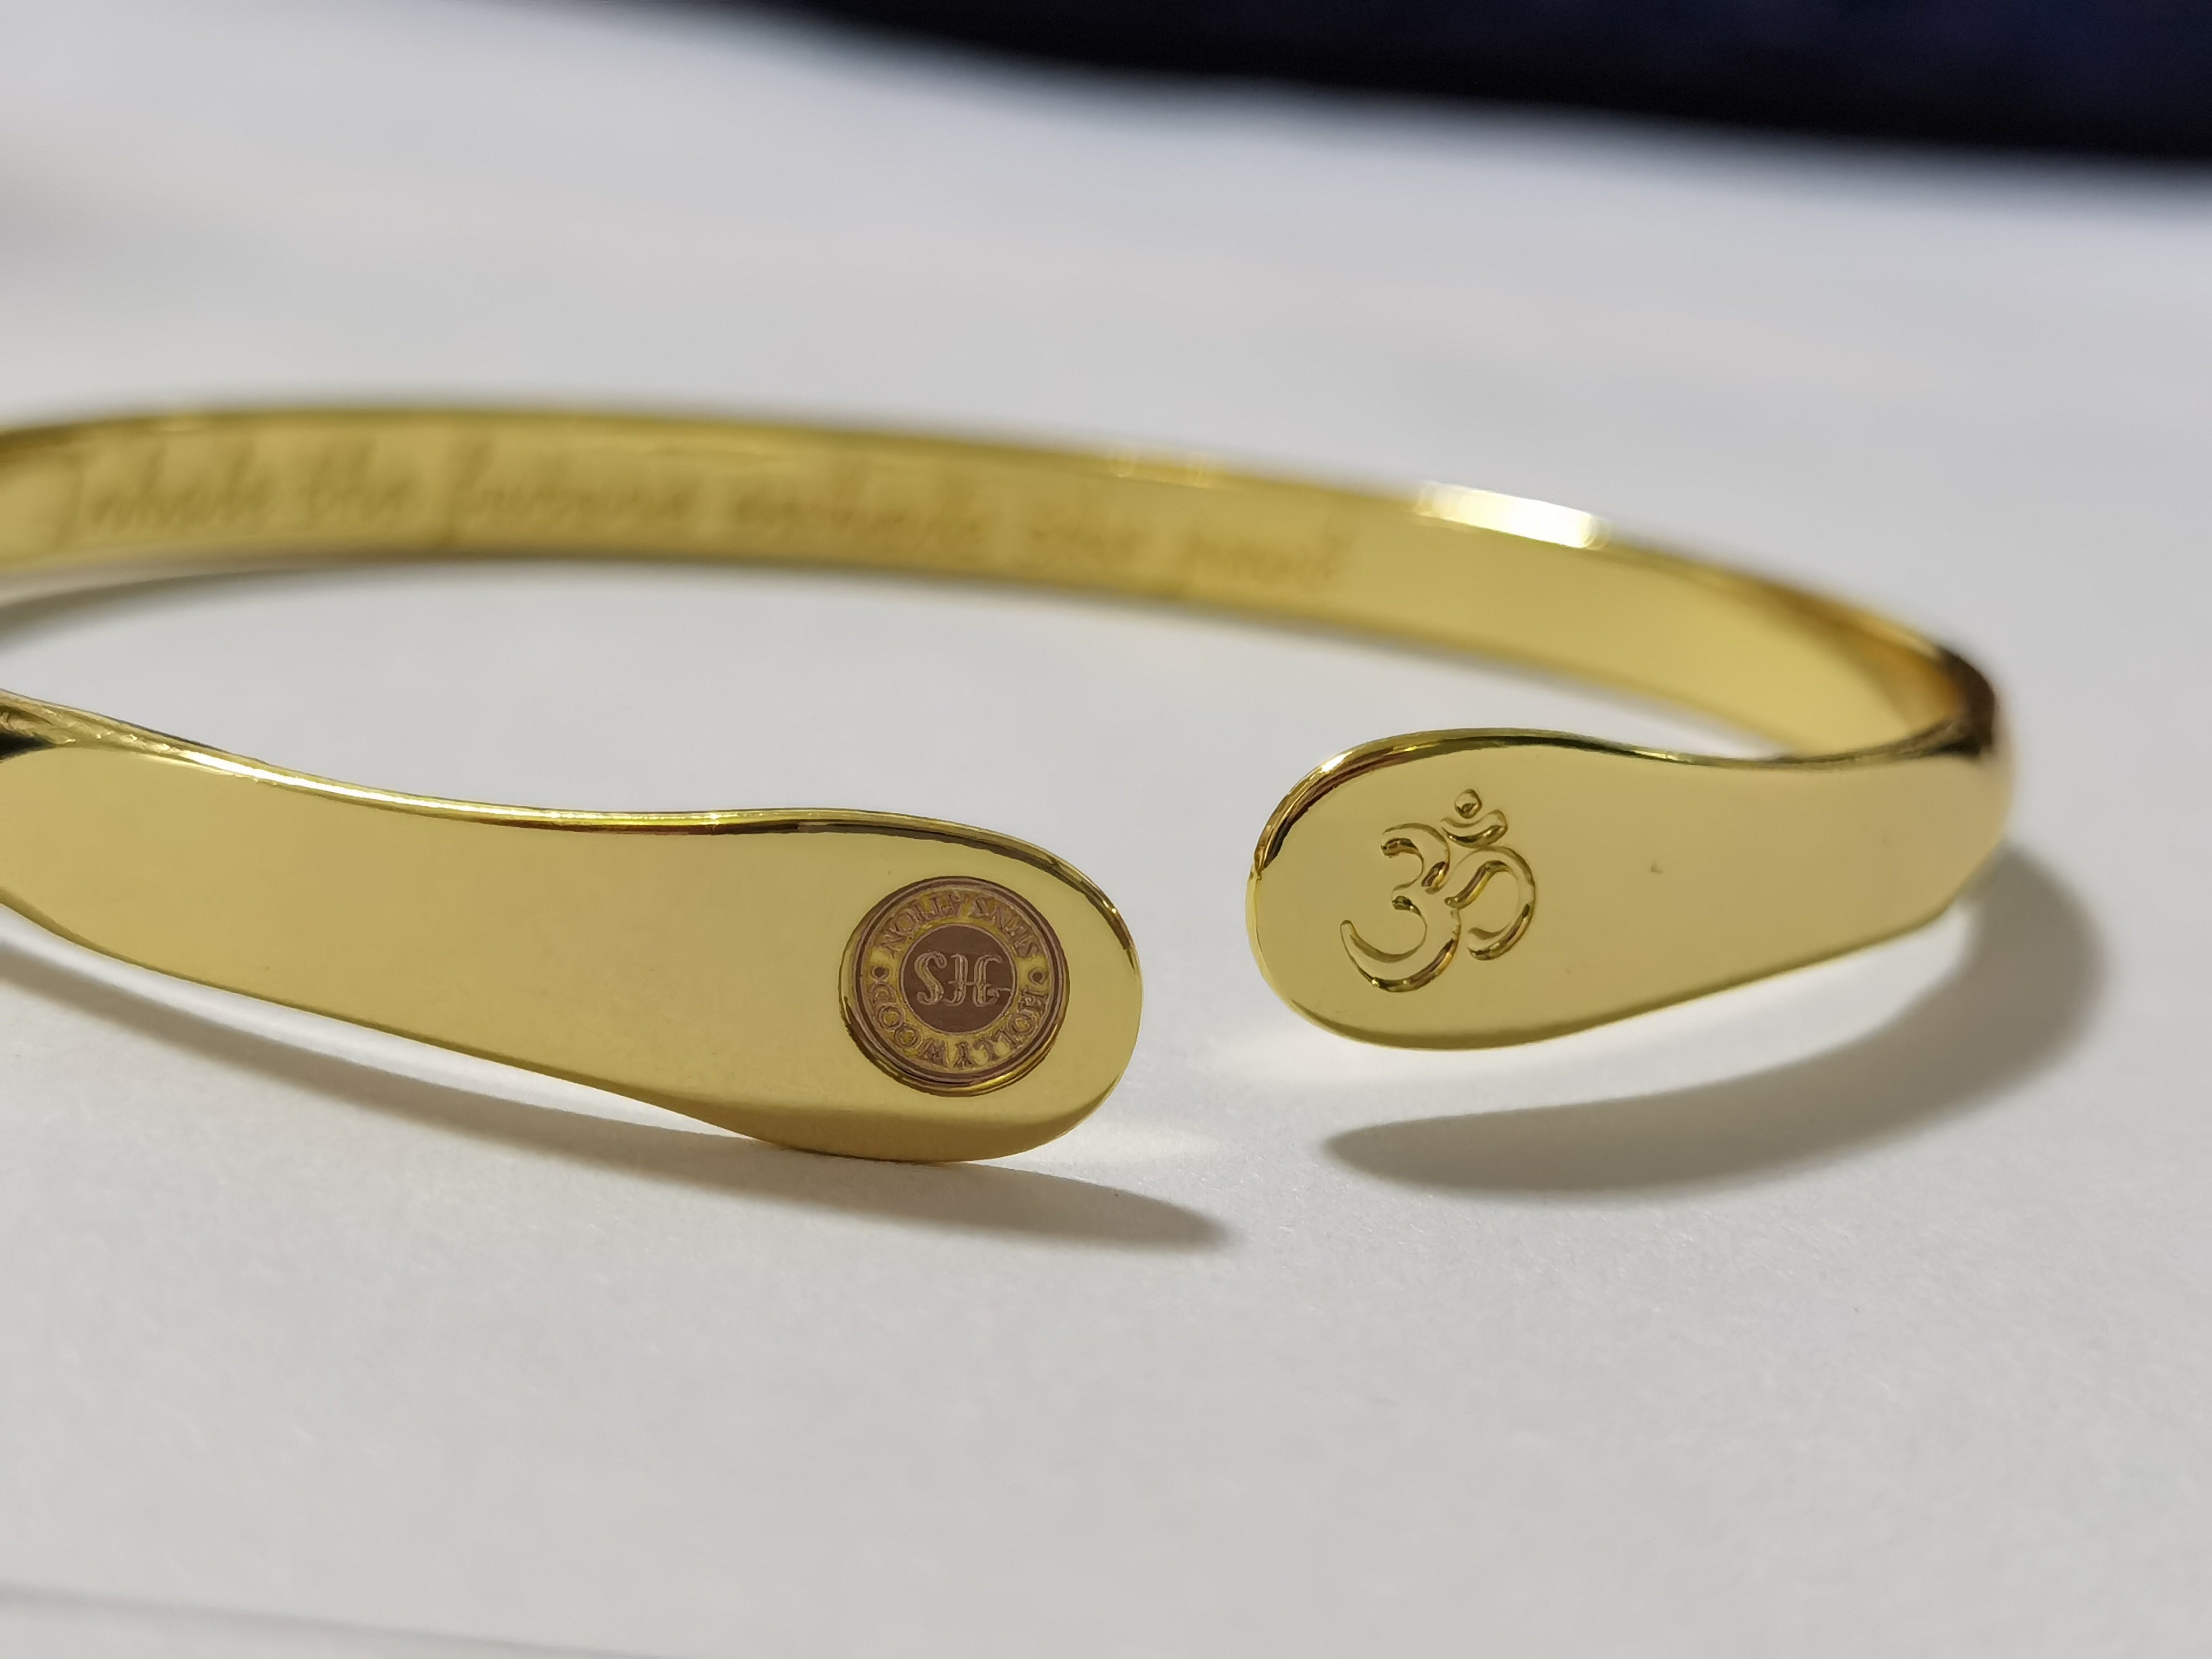 Om 18K Gold Plated Silver Adjustable Bracelet: Gift/Send Jewellery Gifts  Online J11149381 |IGP.com